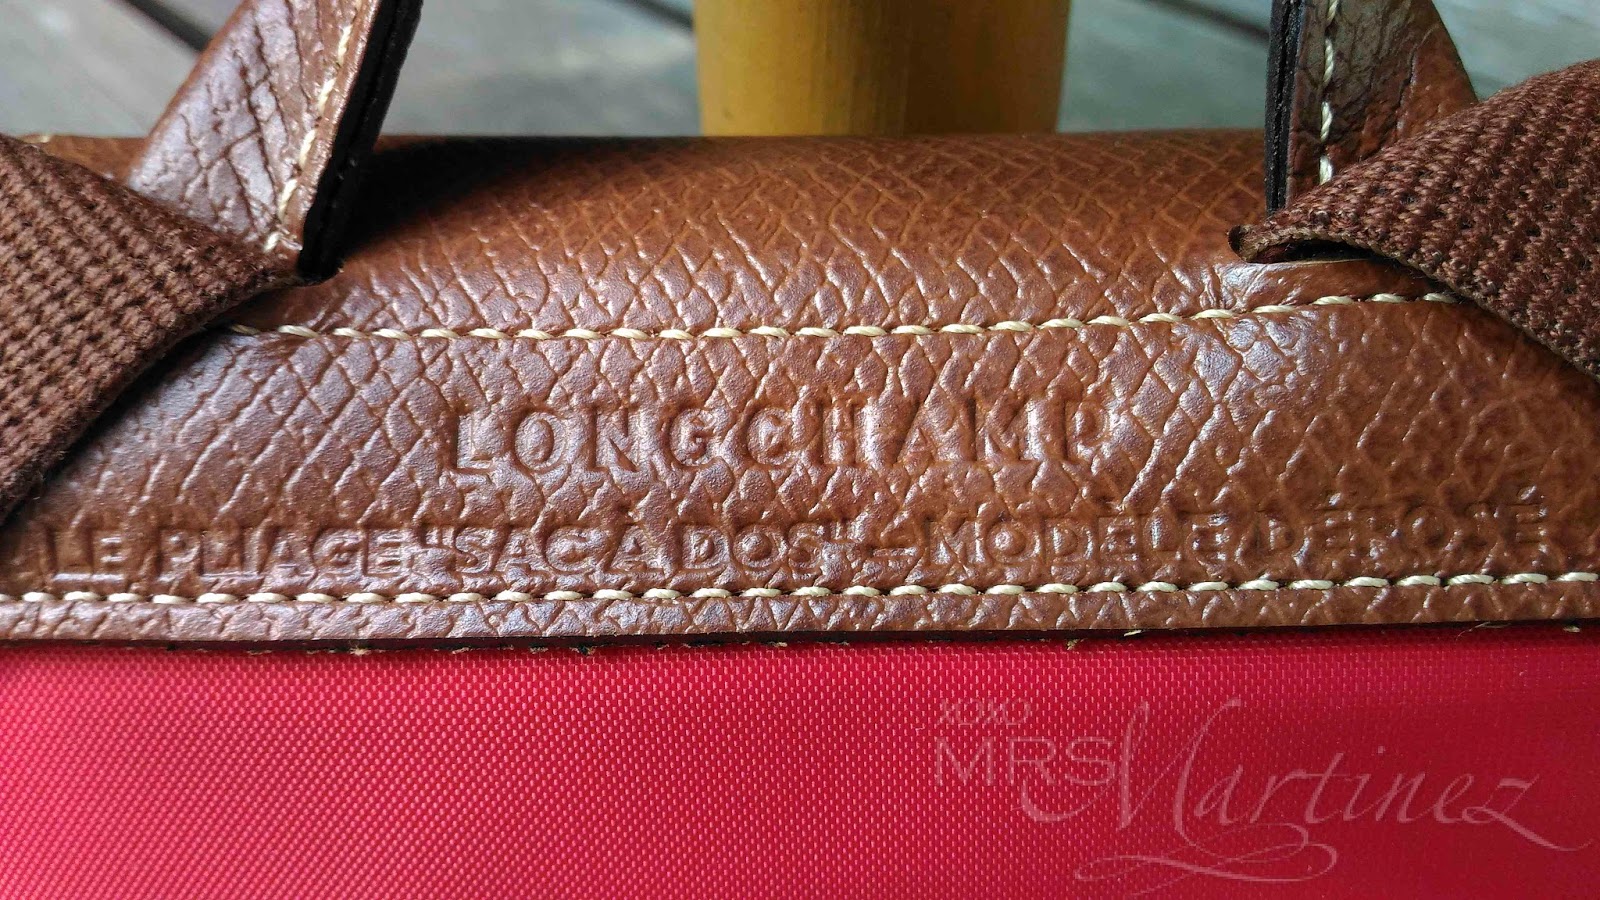 longchamp bag authenticity check